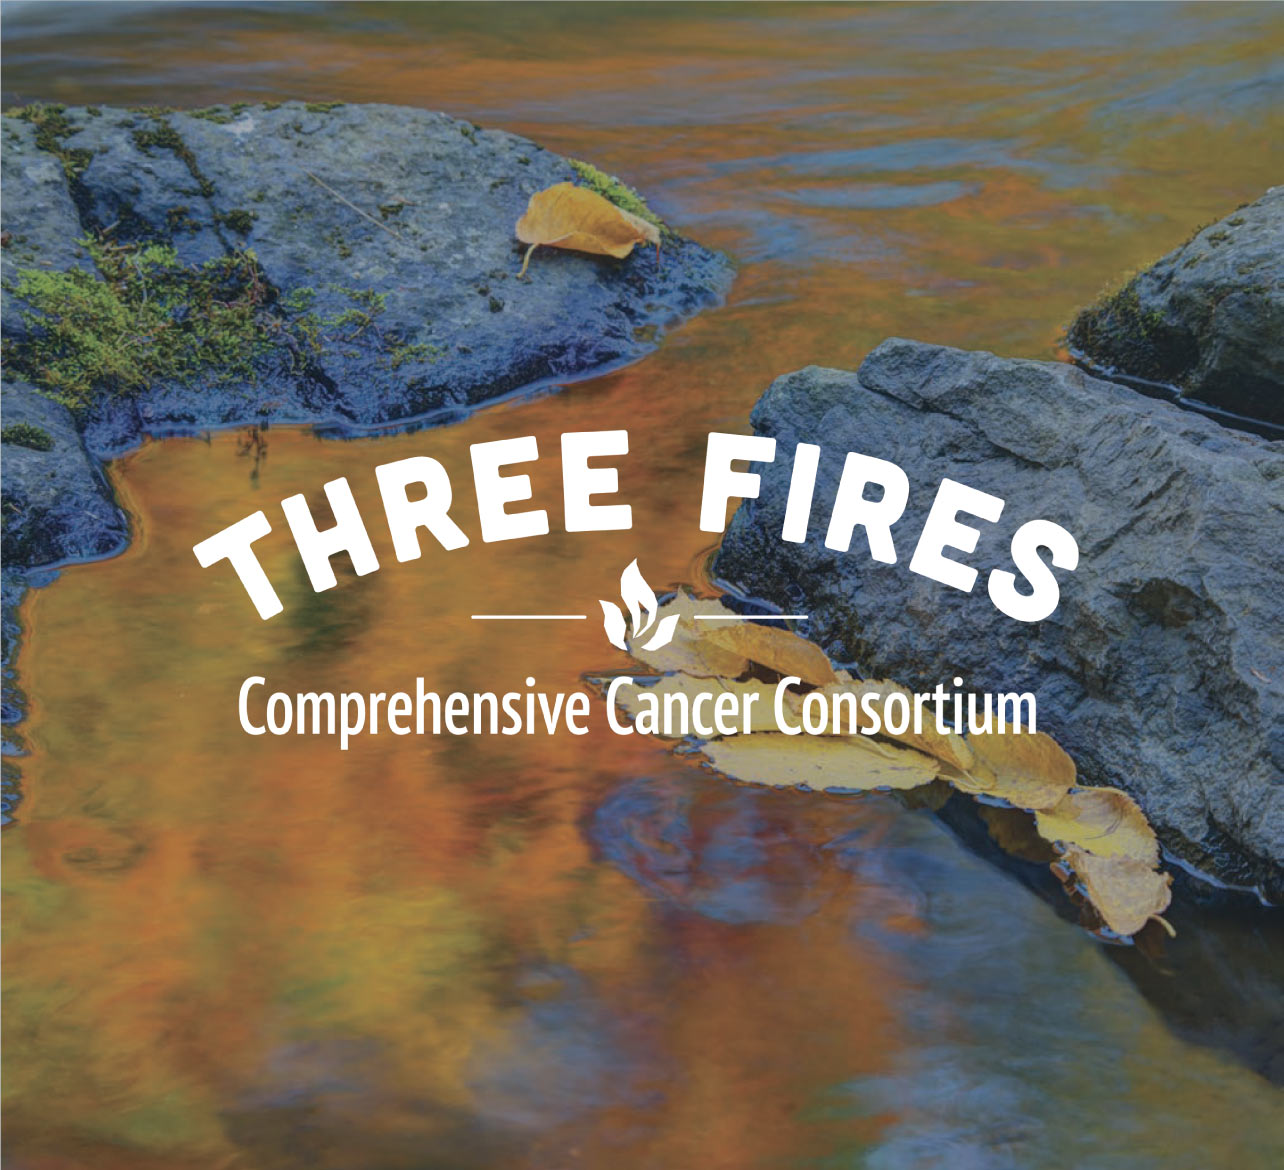 Three Fires Cancer Consortium